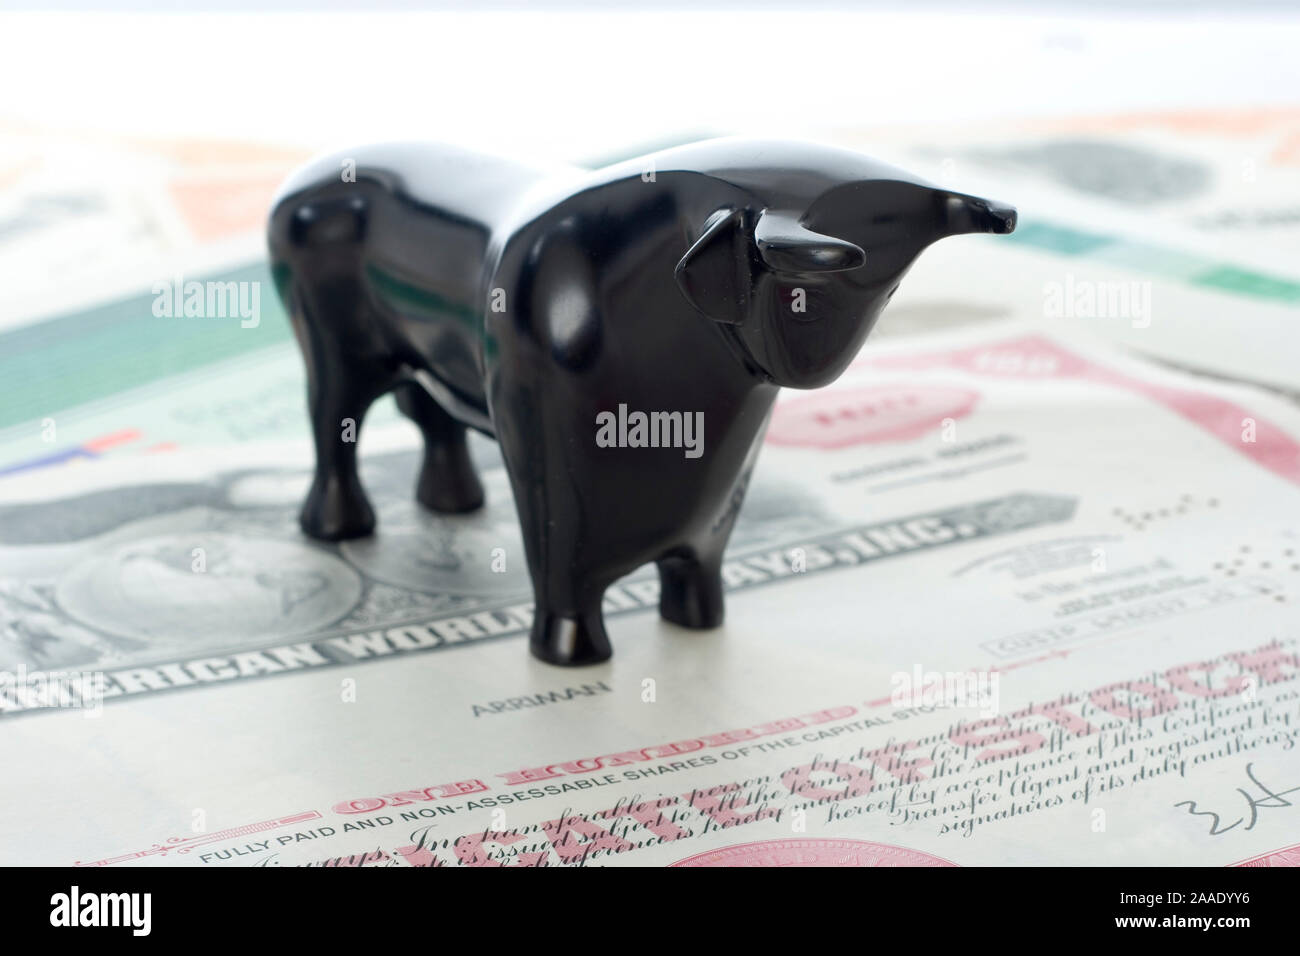 Bulle (steht für steigende Kurse an der Börse) steht auf Aktien (no pr) Stock Photo